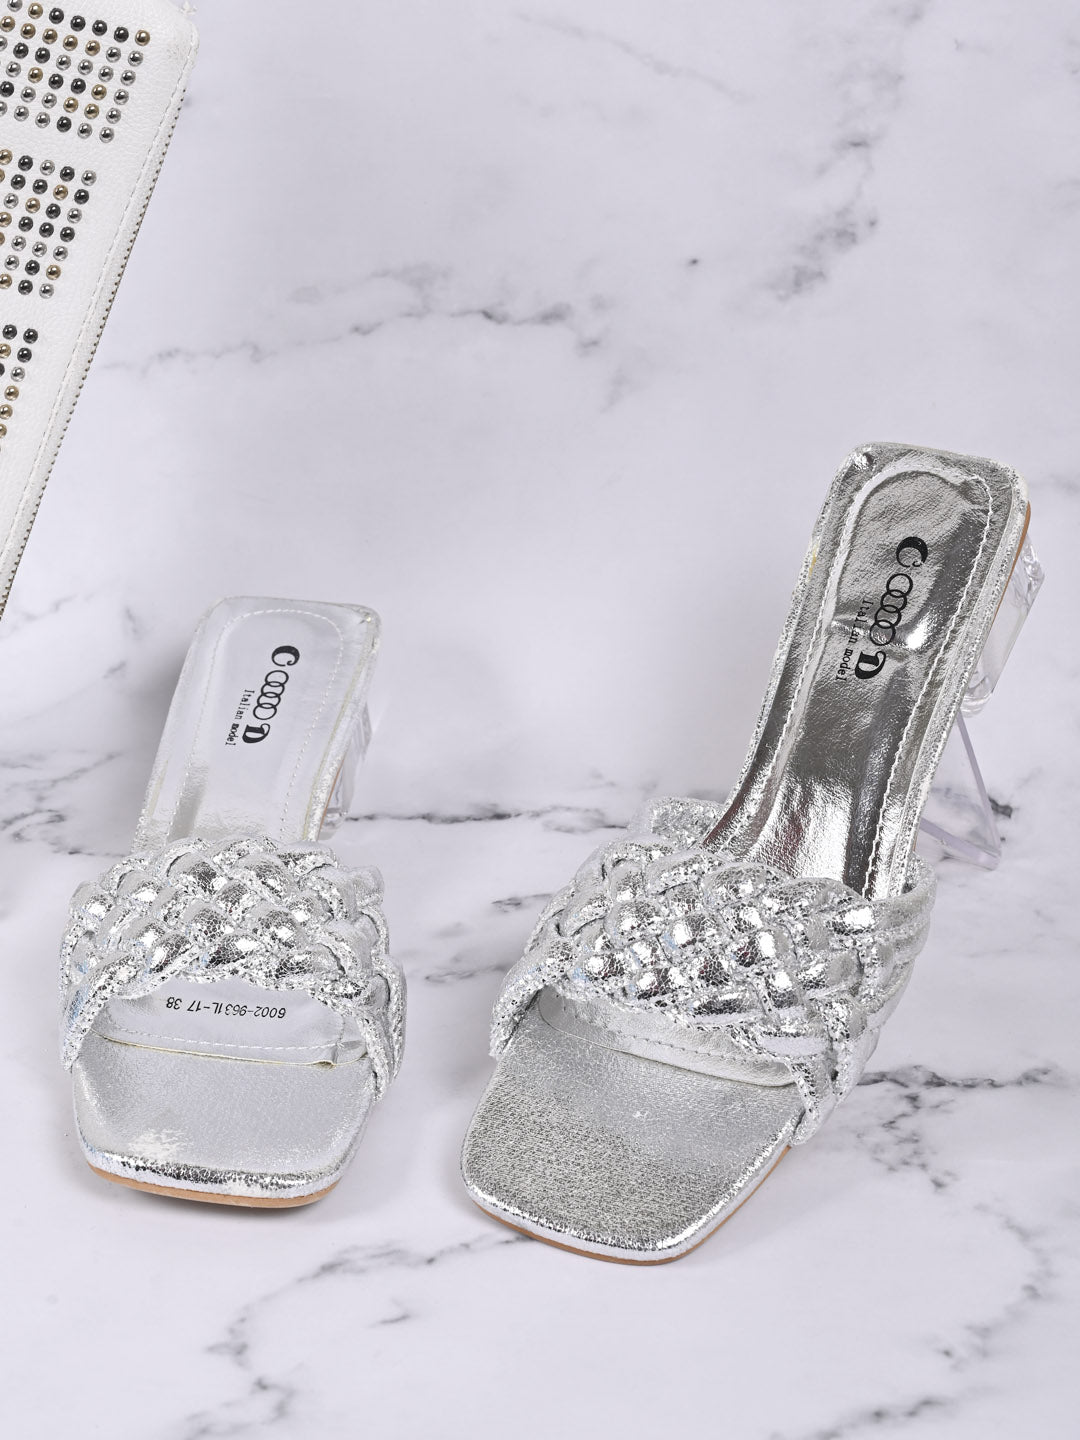 Women Heels - Premium Heels for Women Online| Aldo Shoes